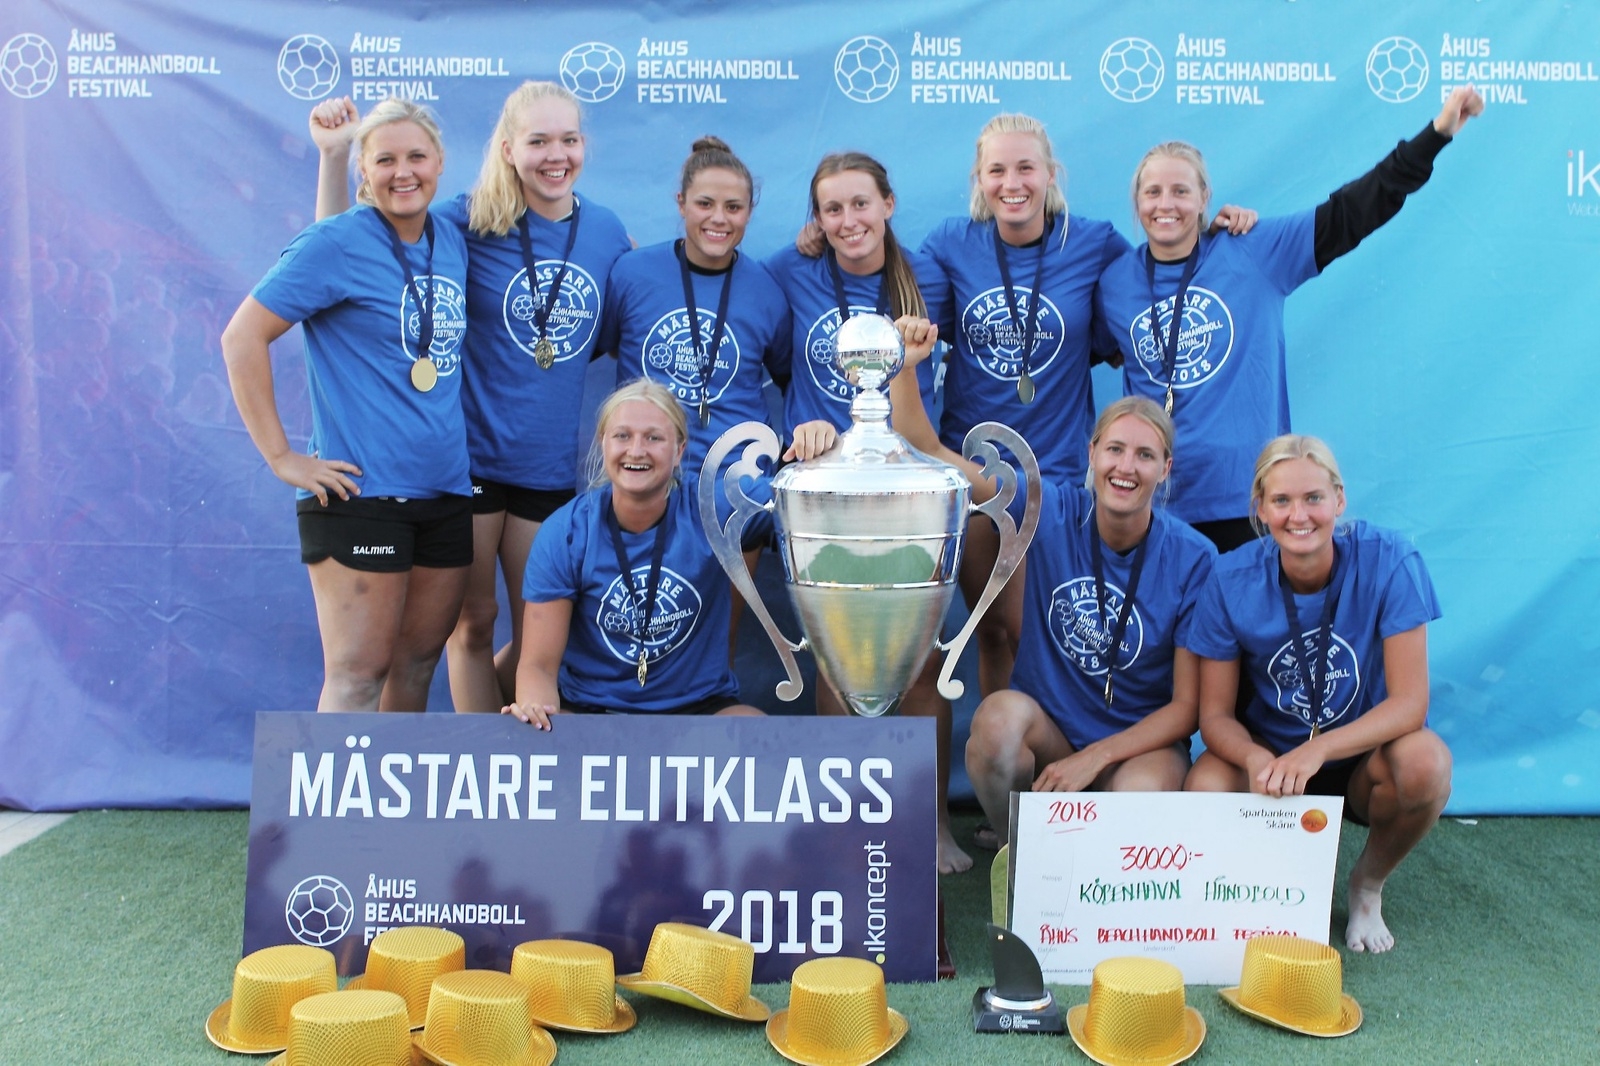 København vann damernas elitklass. Foto: Daniel Modig/Ikoncept AB